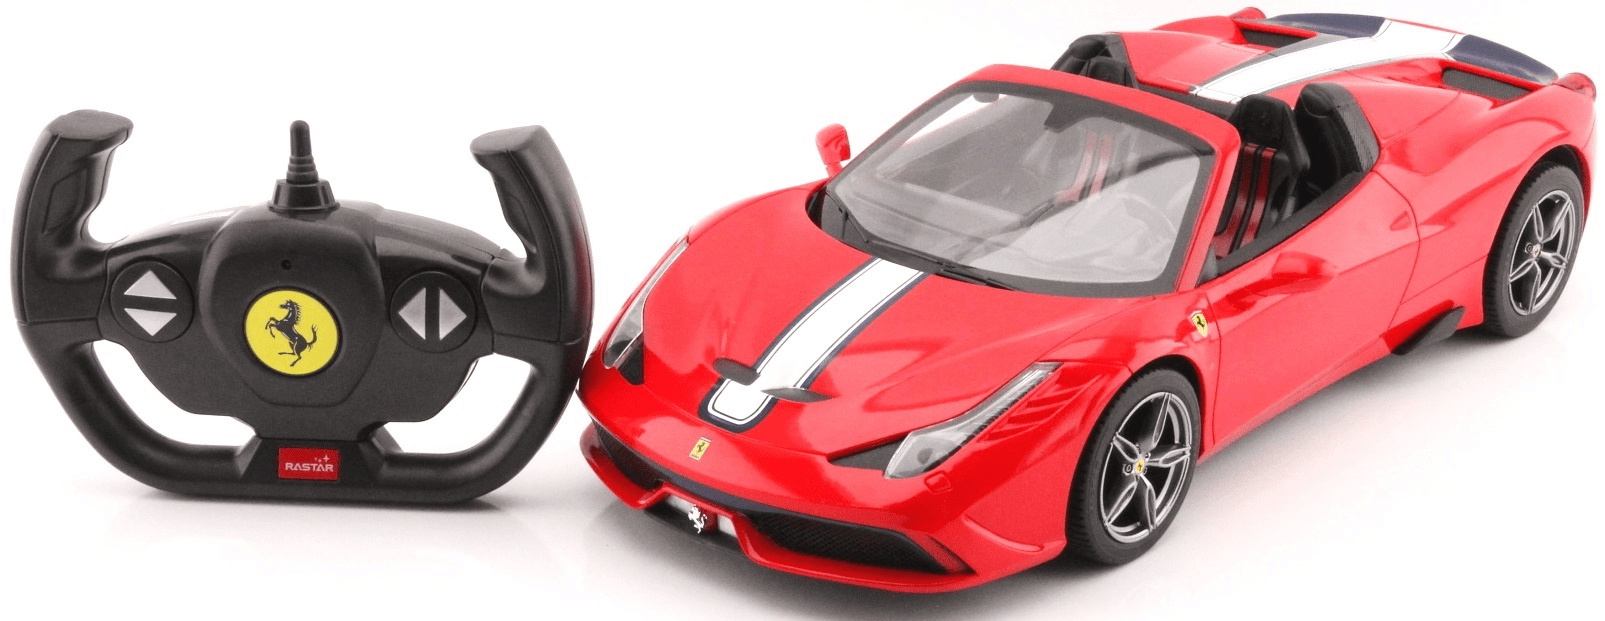 Mondo - Voiture Radiocommandée Ferrari 458 Italia Speciale 1/24